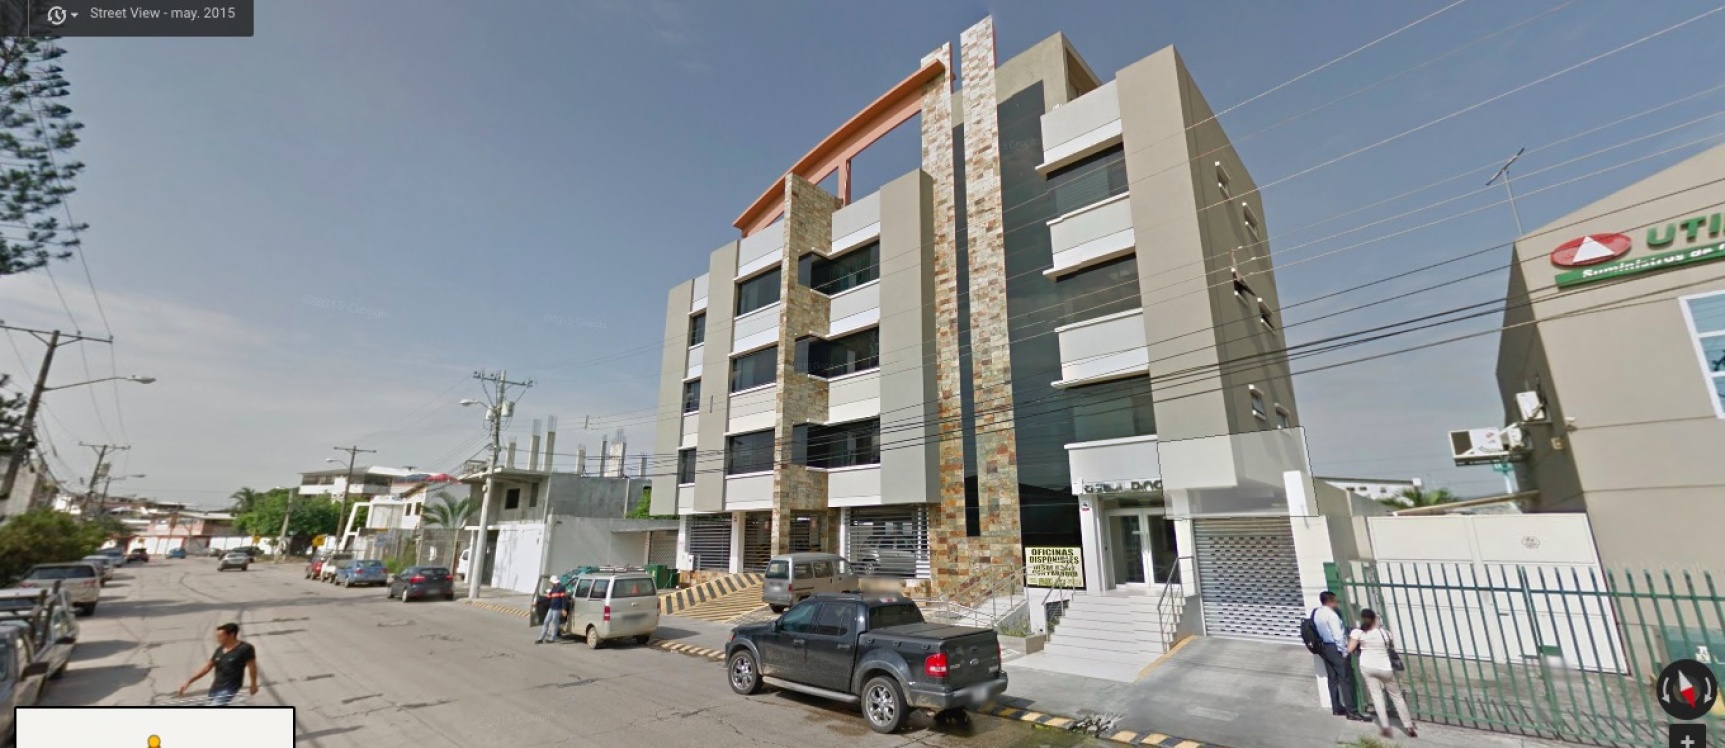 GeoBienes - Alquilo oficina en la Garzota Guayaquil Edificio GS Building - Plusvalia Guayaquil Casas de venta y alquiler Inmobiliaria Ecuador